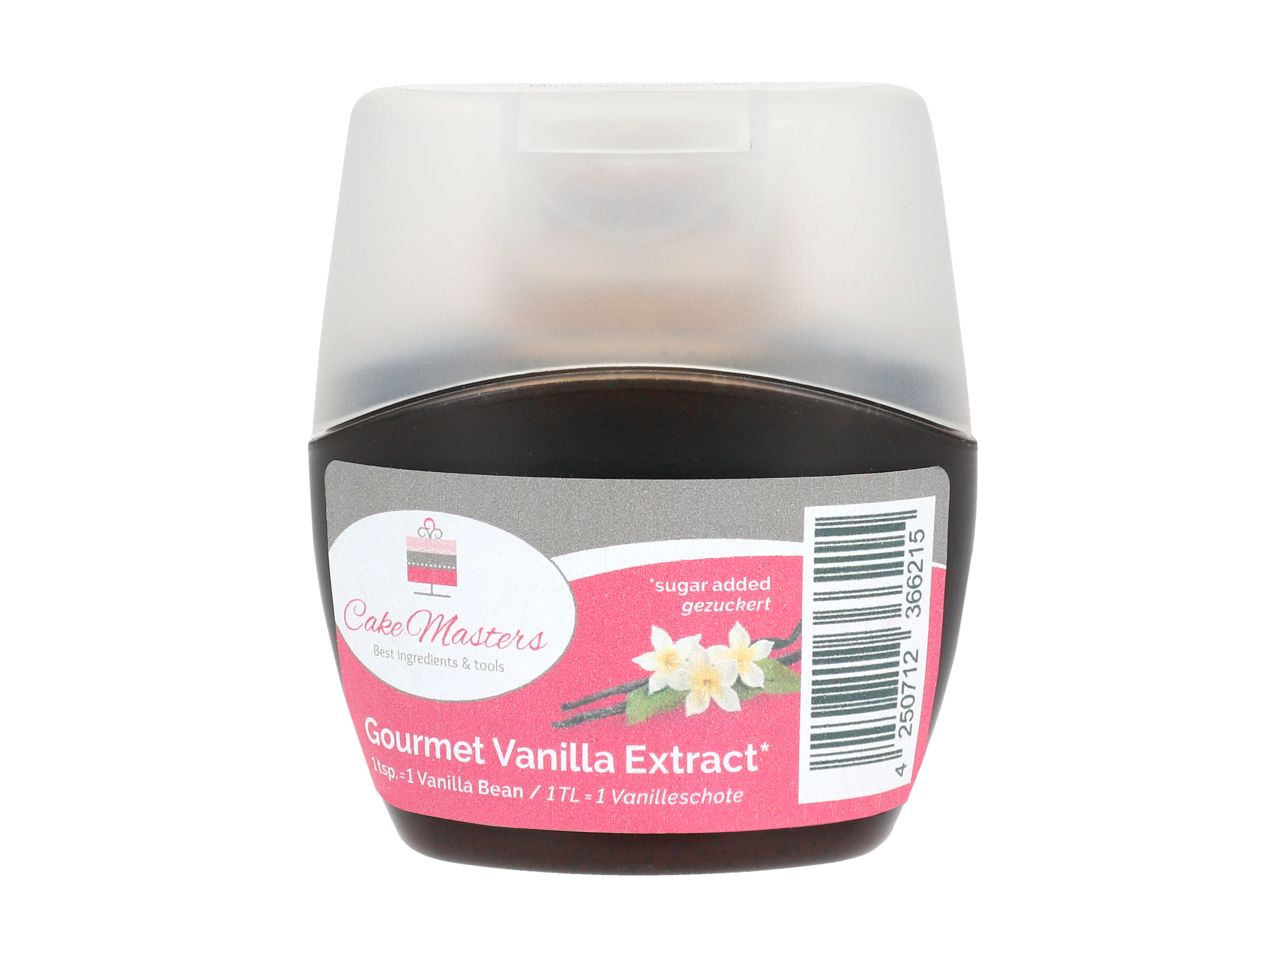 Gourmet-Vanilleextrakt aus Tahiti-Vanille, 70 g